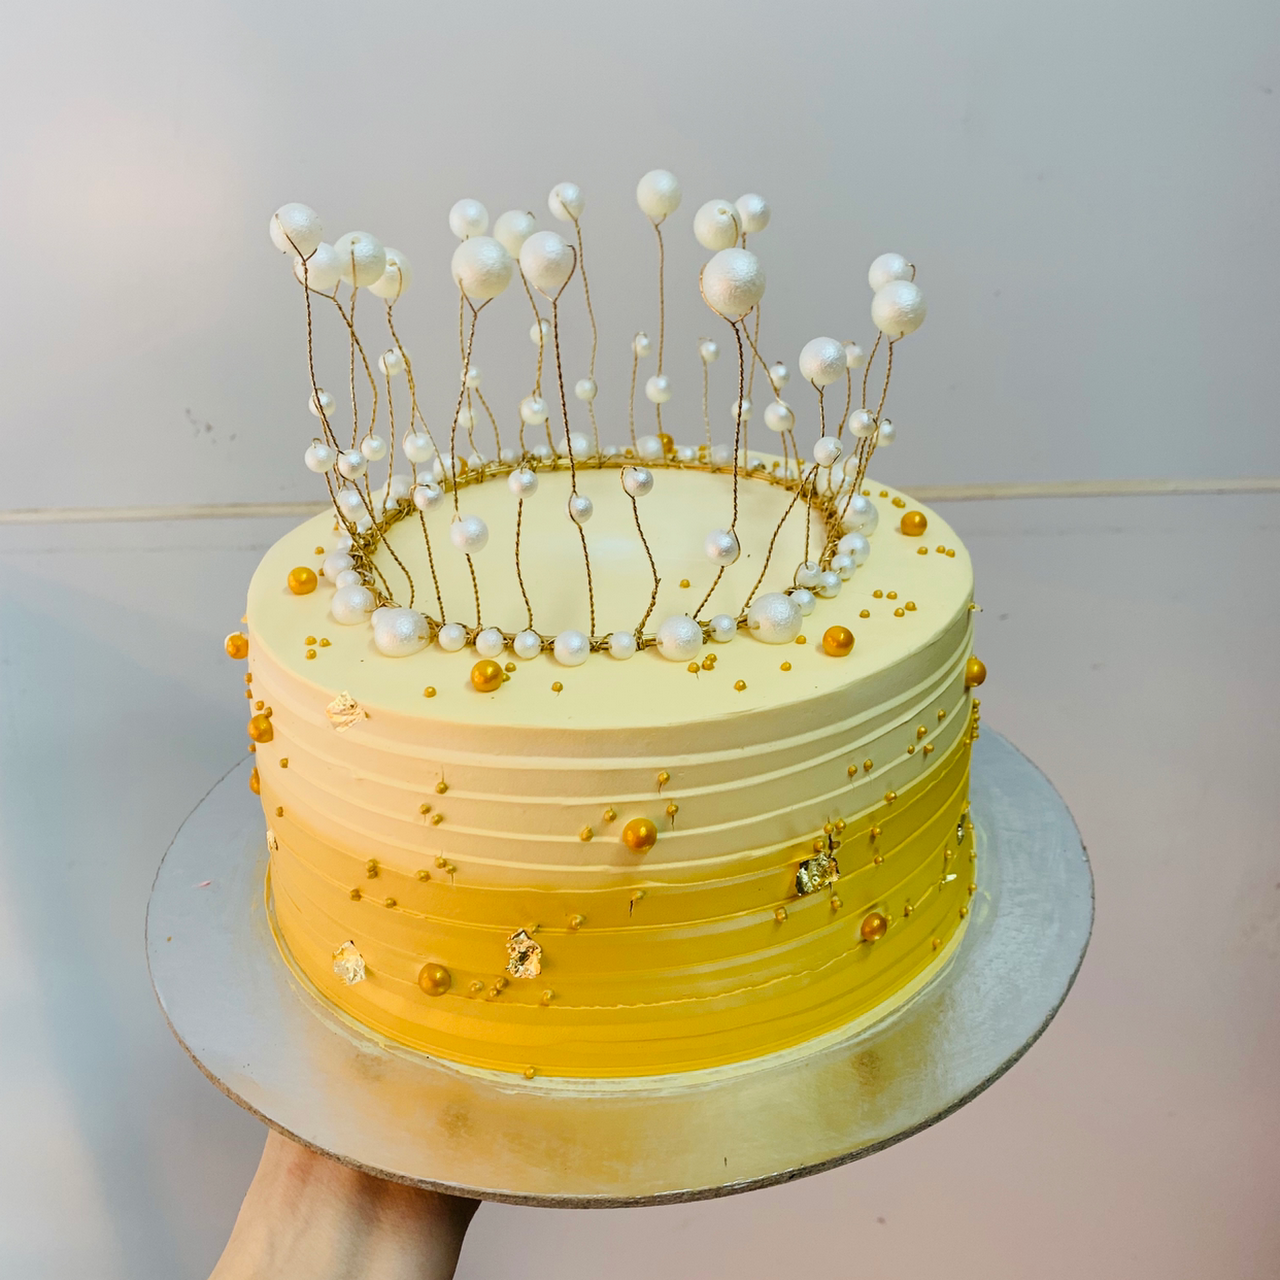 Hình ảnh bánh sinh nhật màu vàng với những vươn ngọc vươn lên